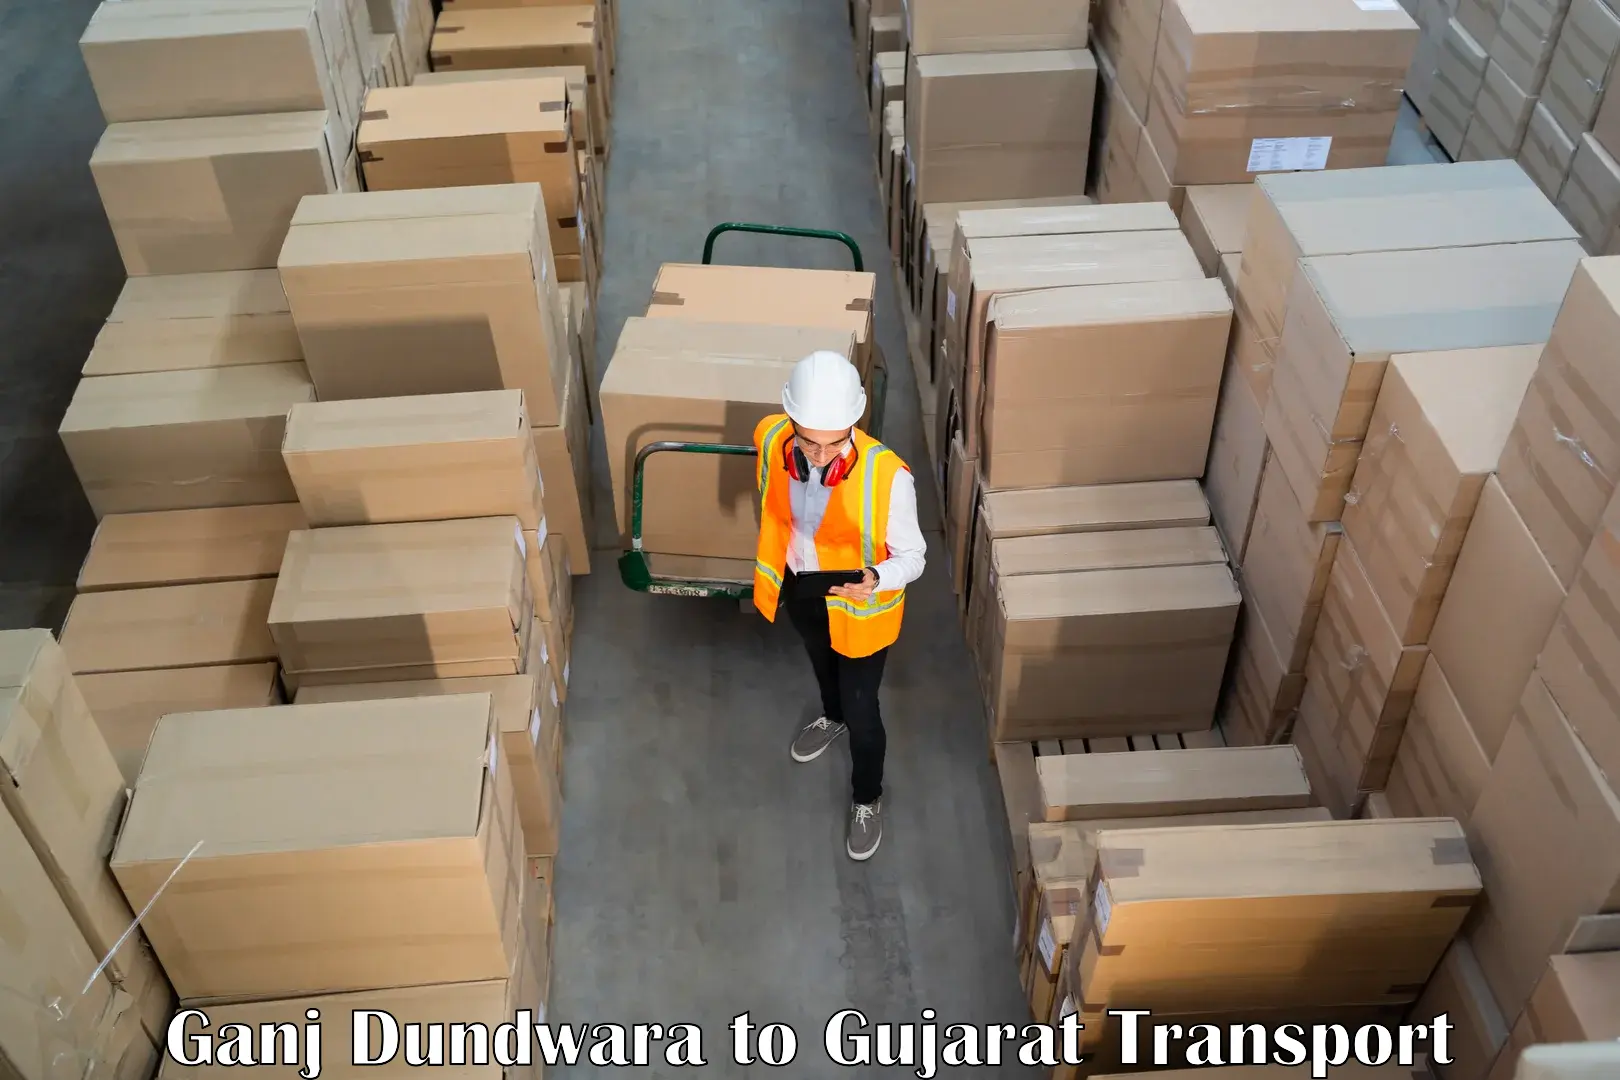 Cargo transportation services Ganj Dundwara to Katodara